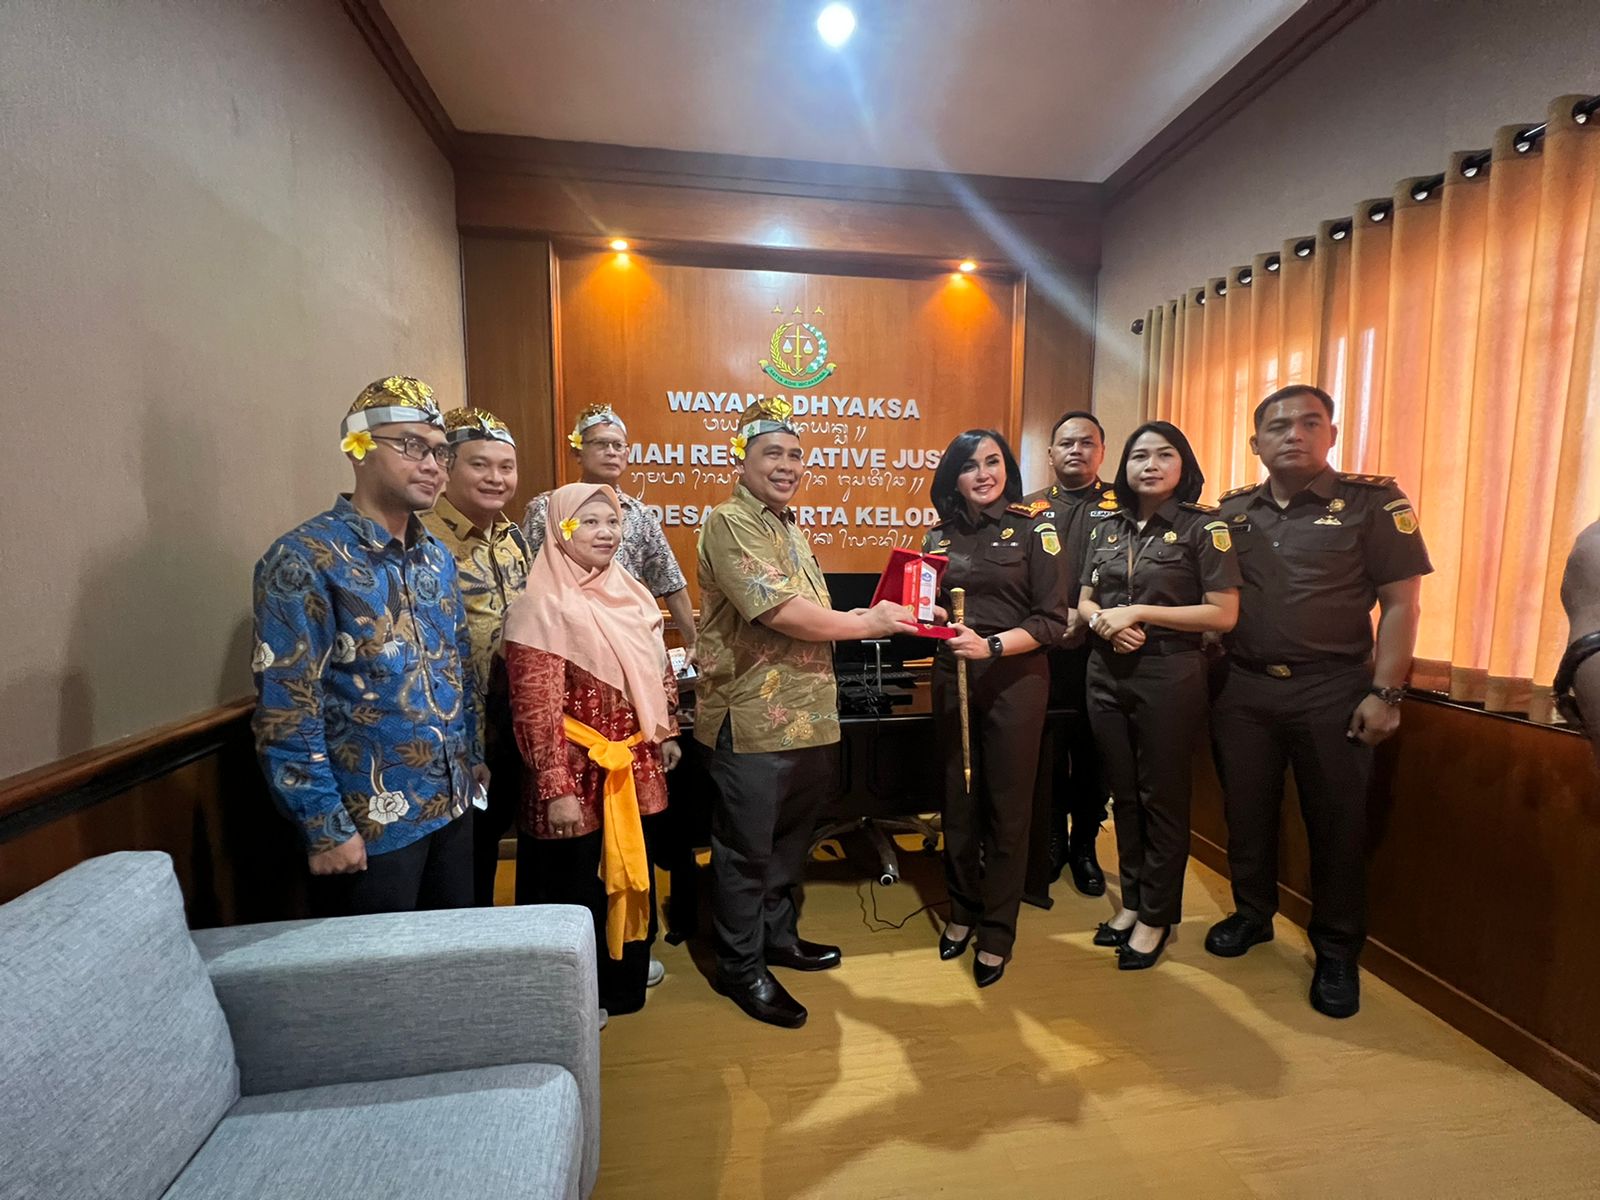 Kunjungan ke rumah restorative justice Wayan Adhyaksa Kejaksaan Negeri Denpasar Bali (1)